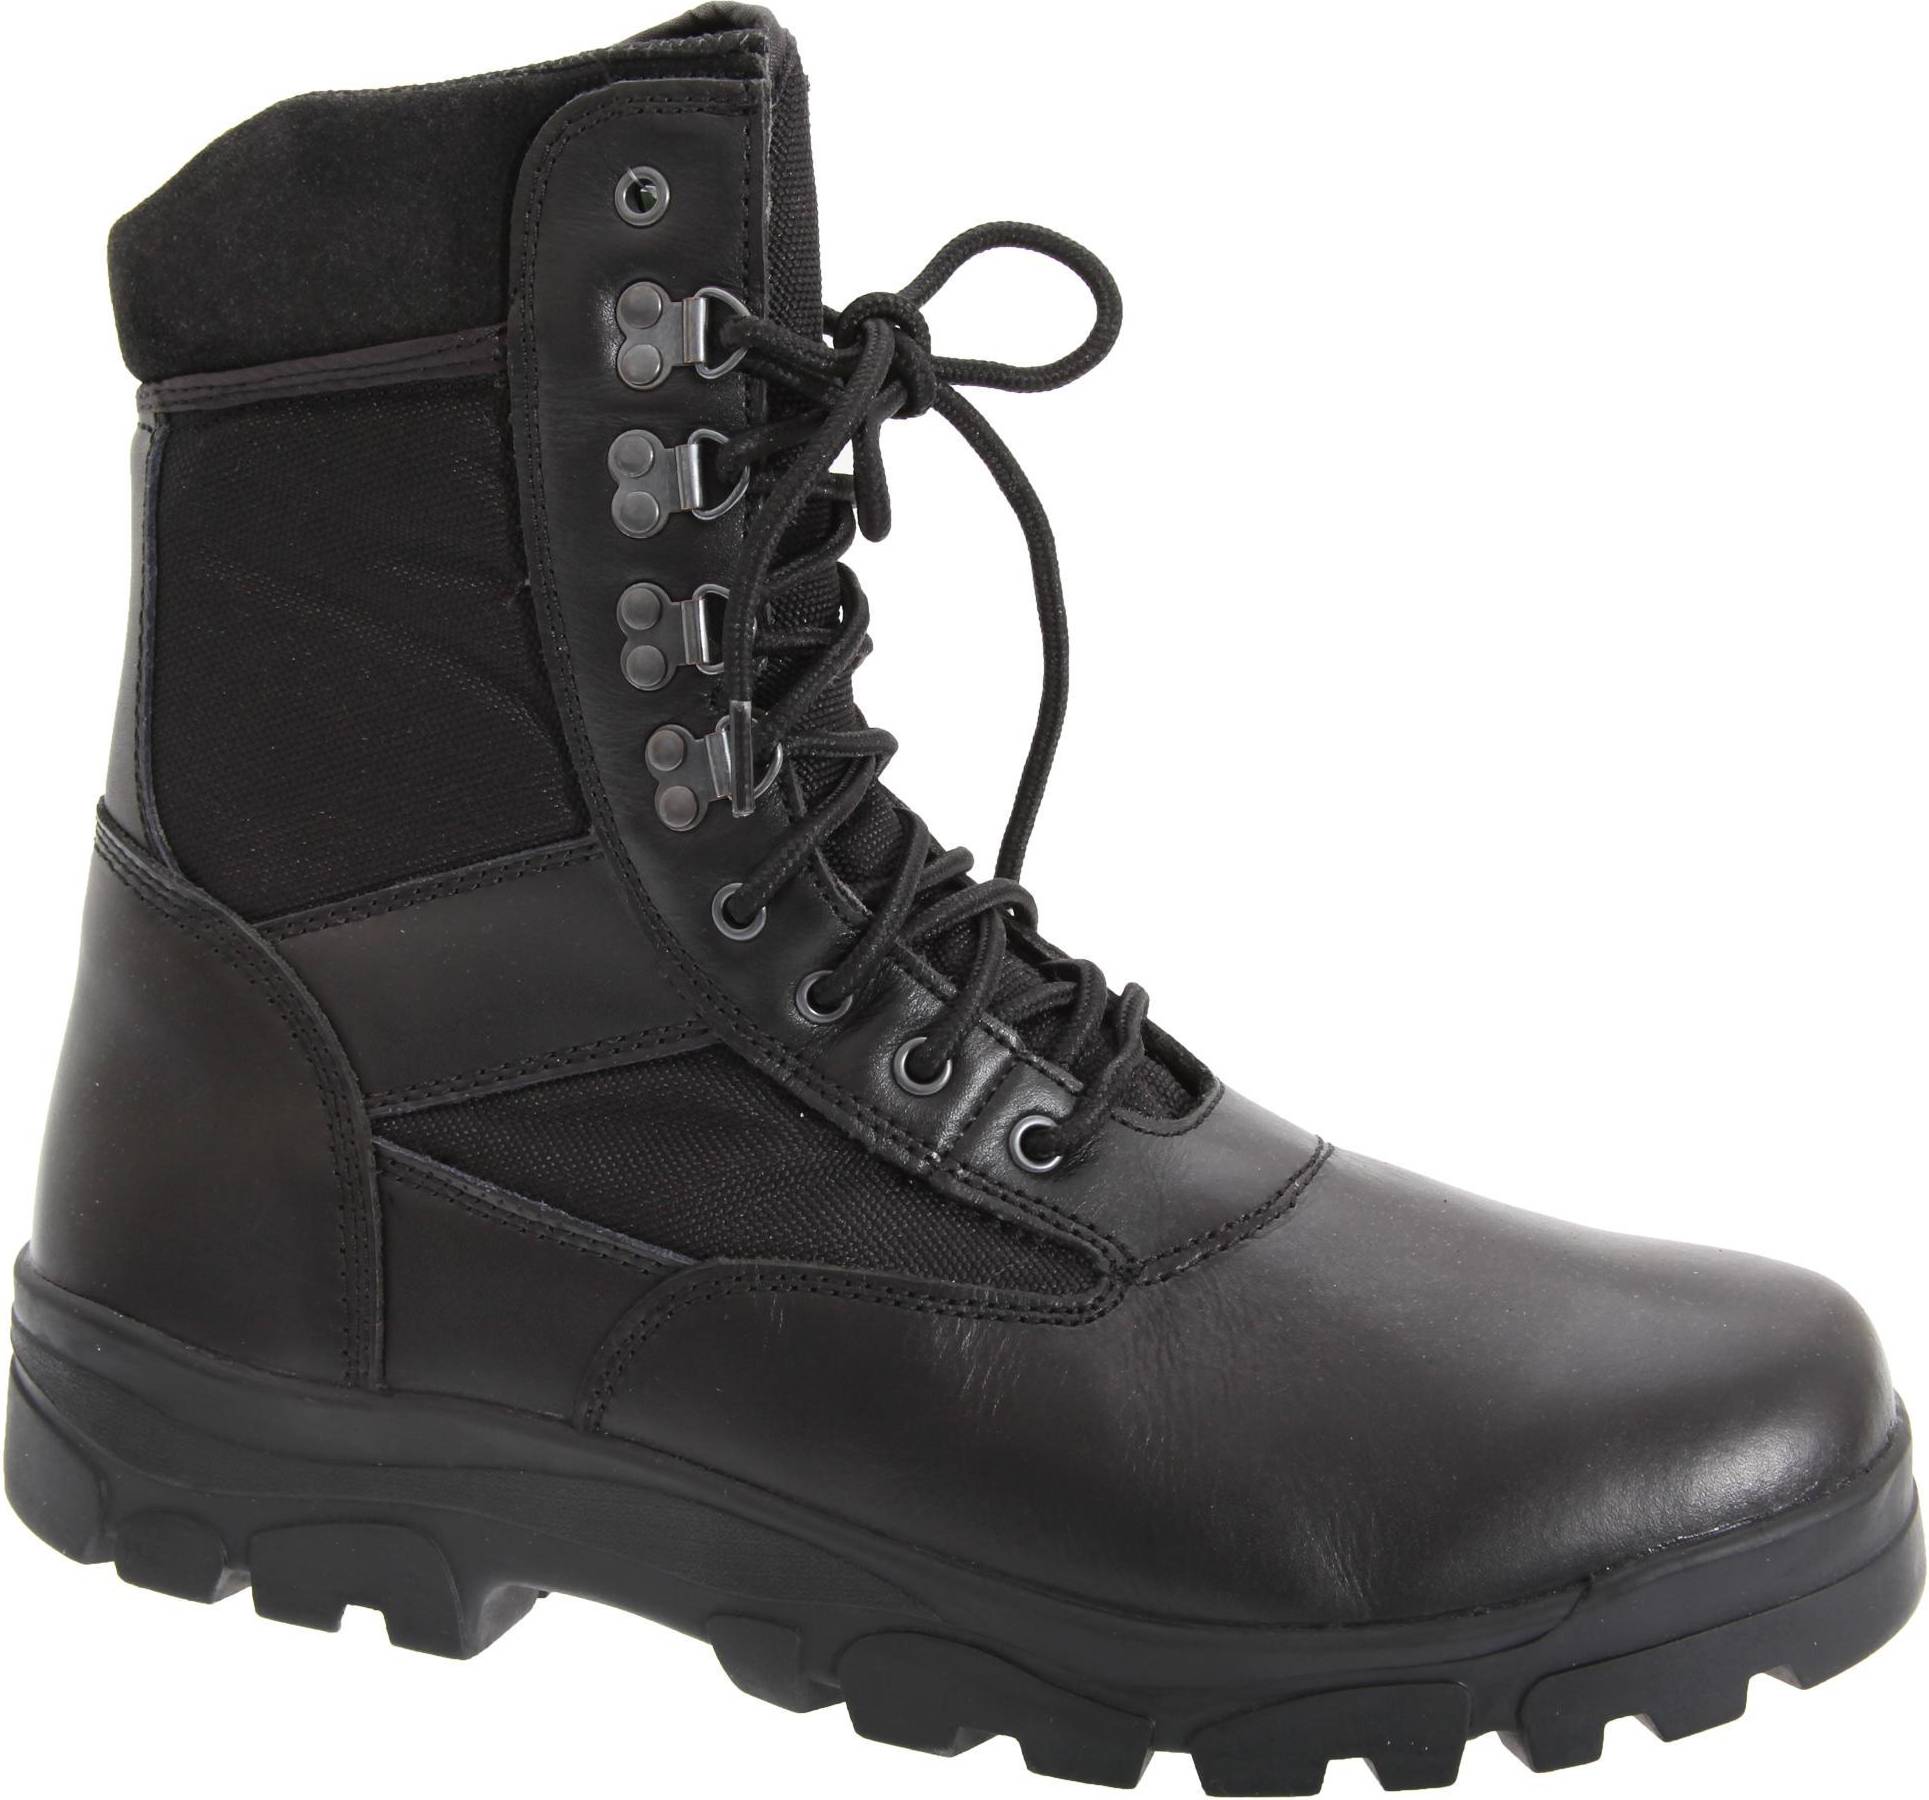  Bild på grafters G-Force Thinsulate Lined Combat Boots - Black vandringskängor